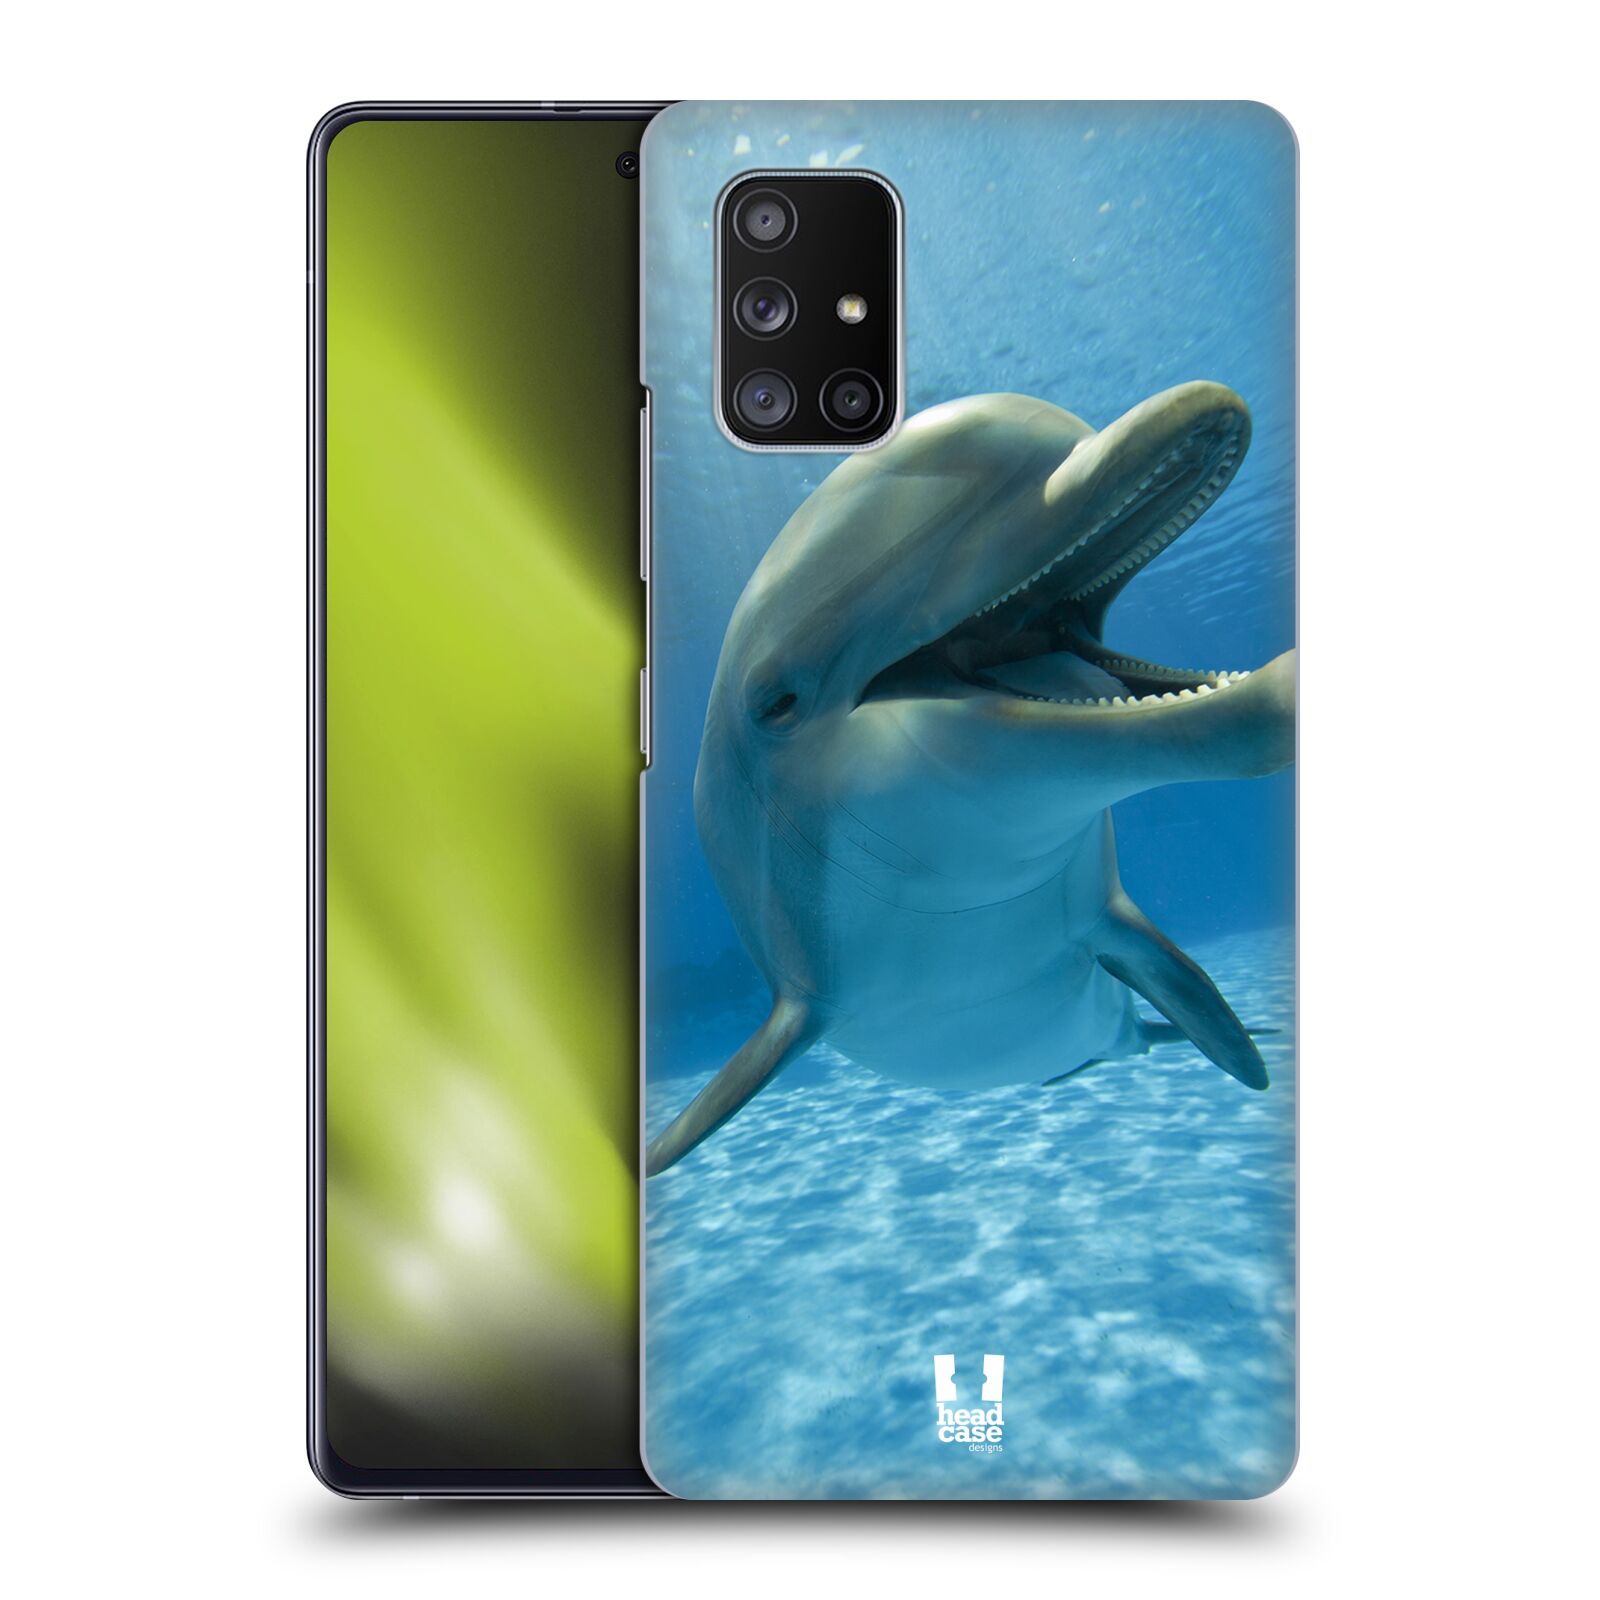 Zadní obal pro mobil Samsung Galaxy A51 5G - HEAD CASE - Svět zvířat delfín v moři